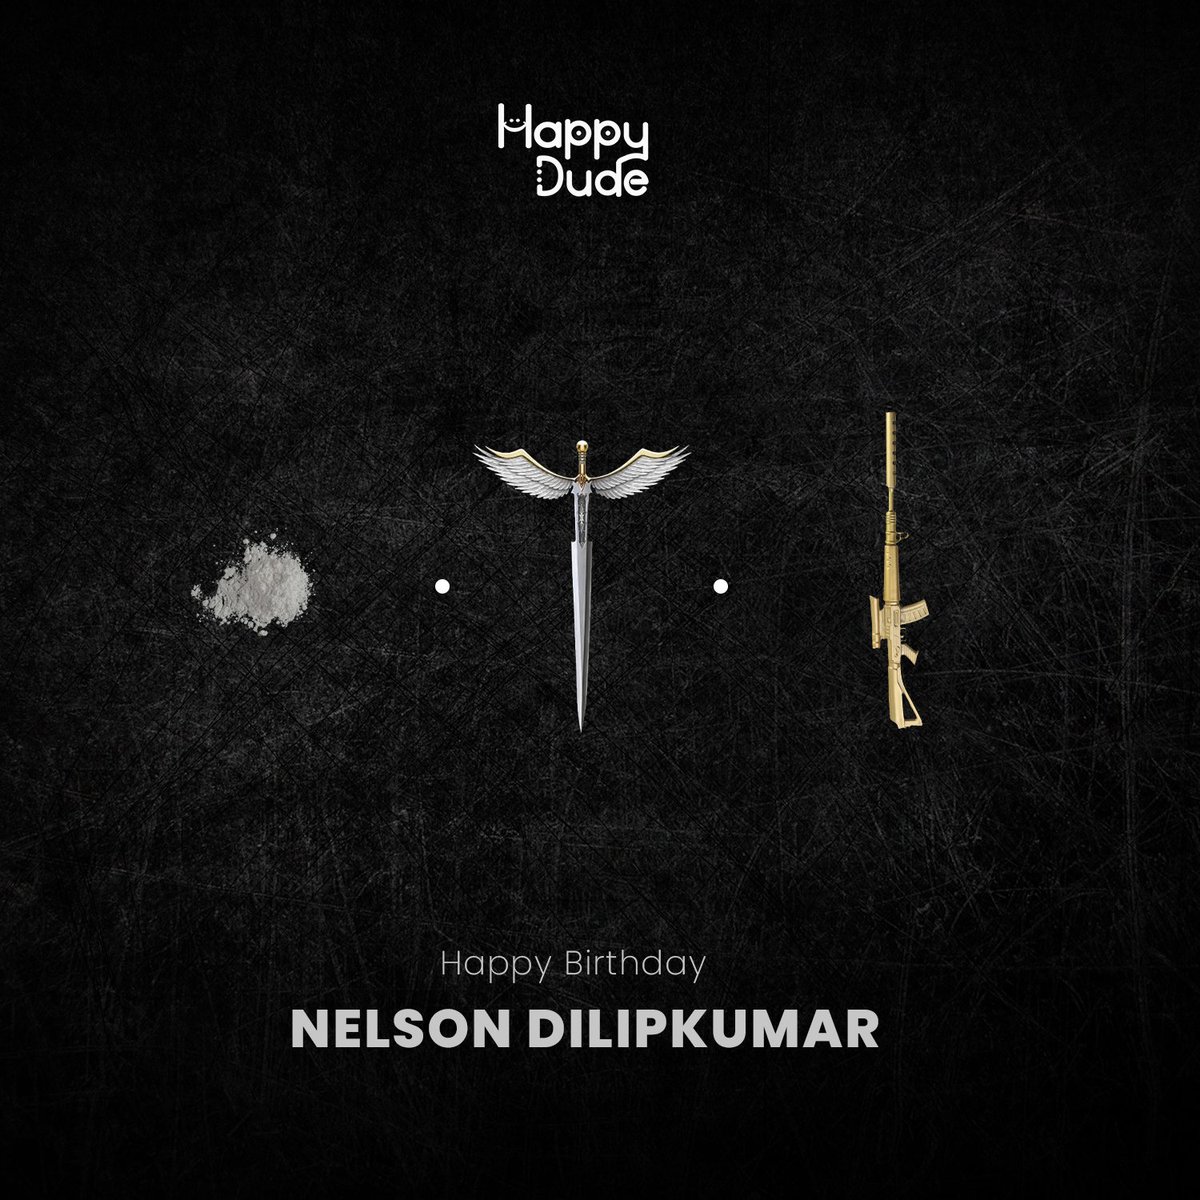 Happy birthday @Nelsondilpkumar 🤗 #HappyBirthdayNelson #HBDNelsonDilipKumar